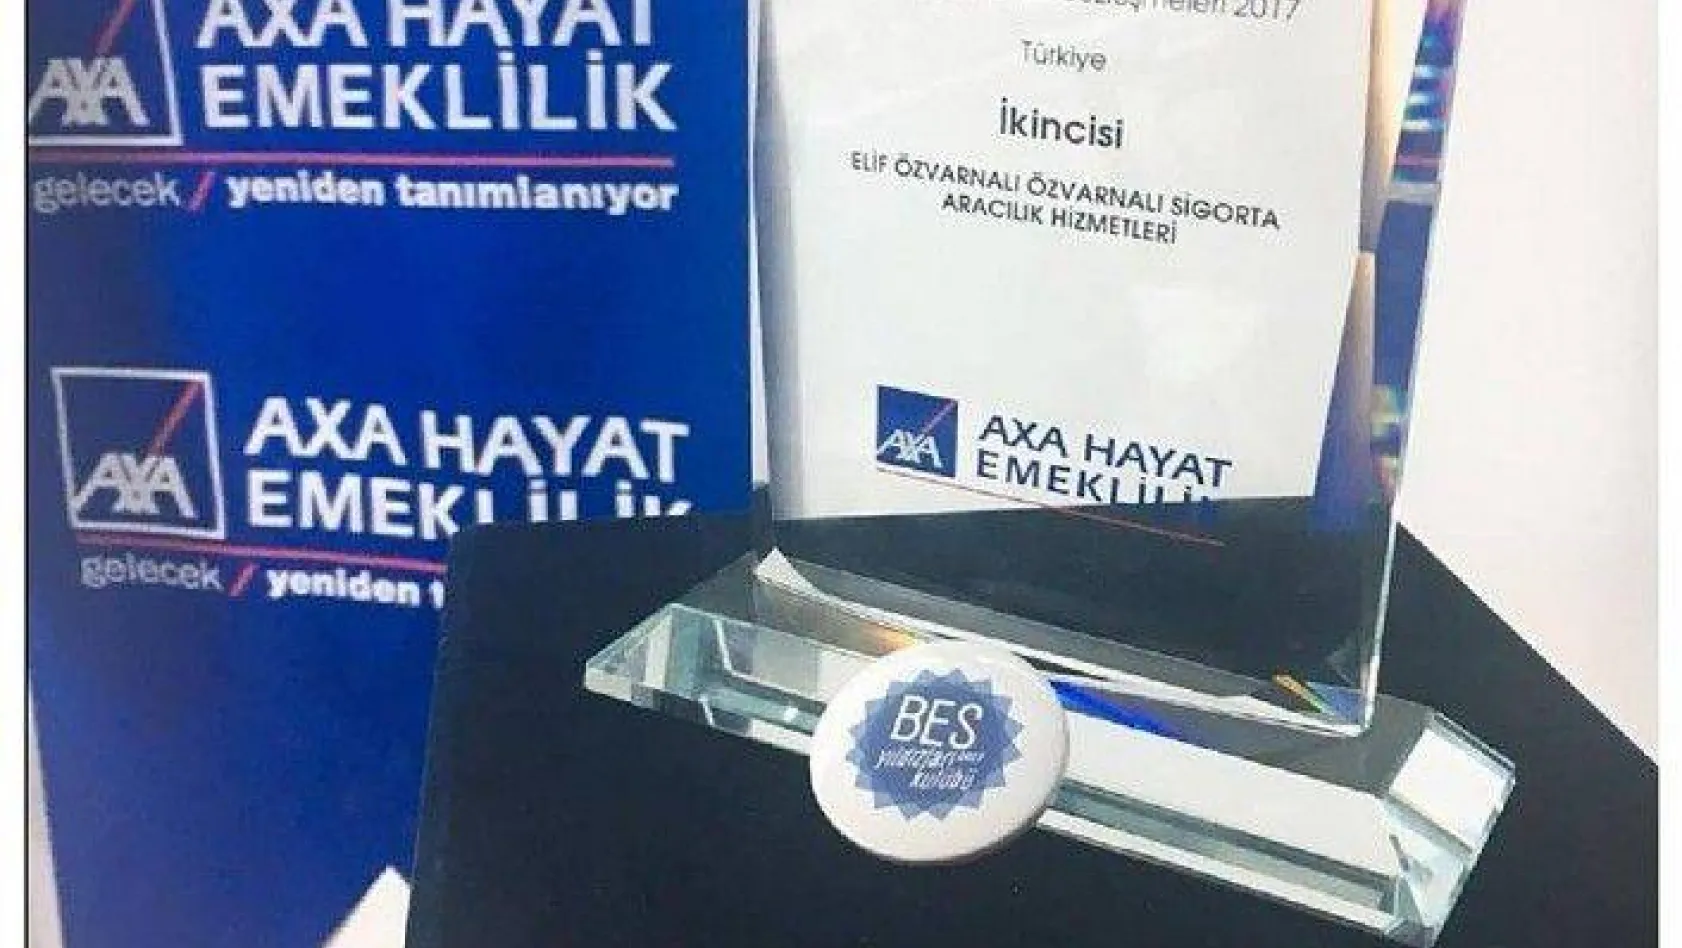 Özvarnalı'dan Türkiye ikinciliği